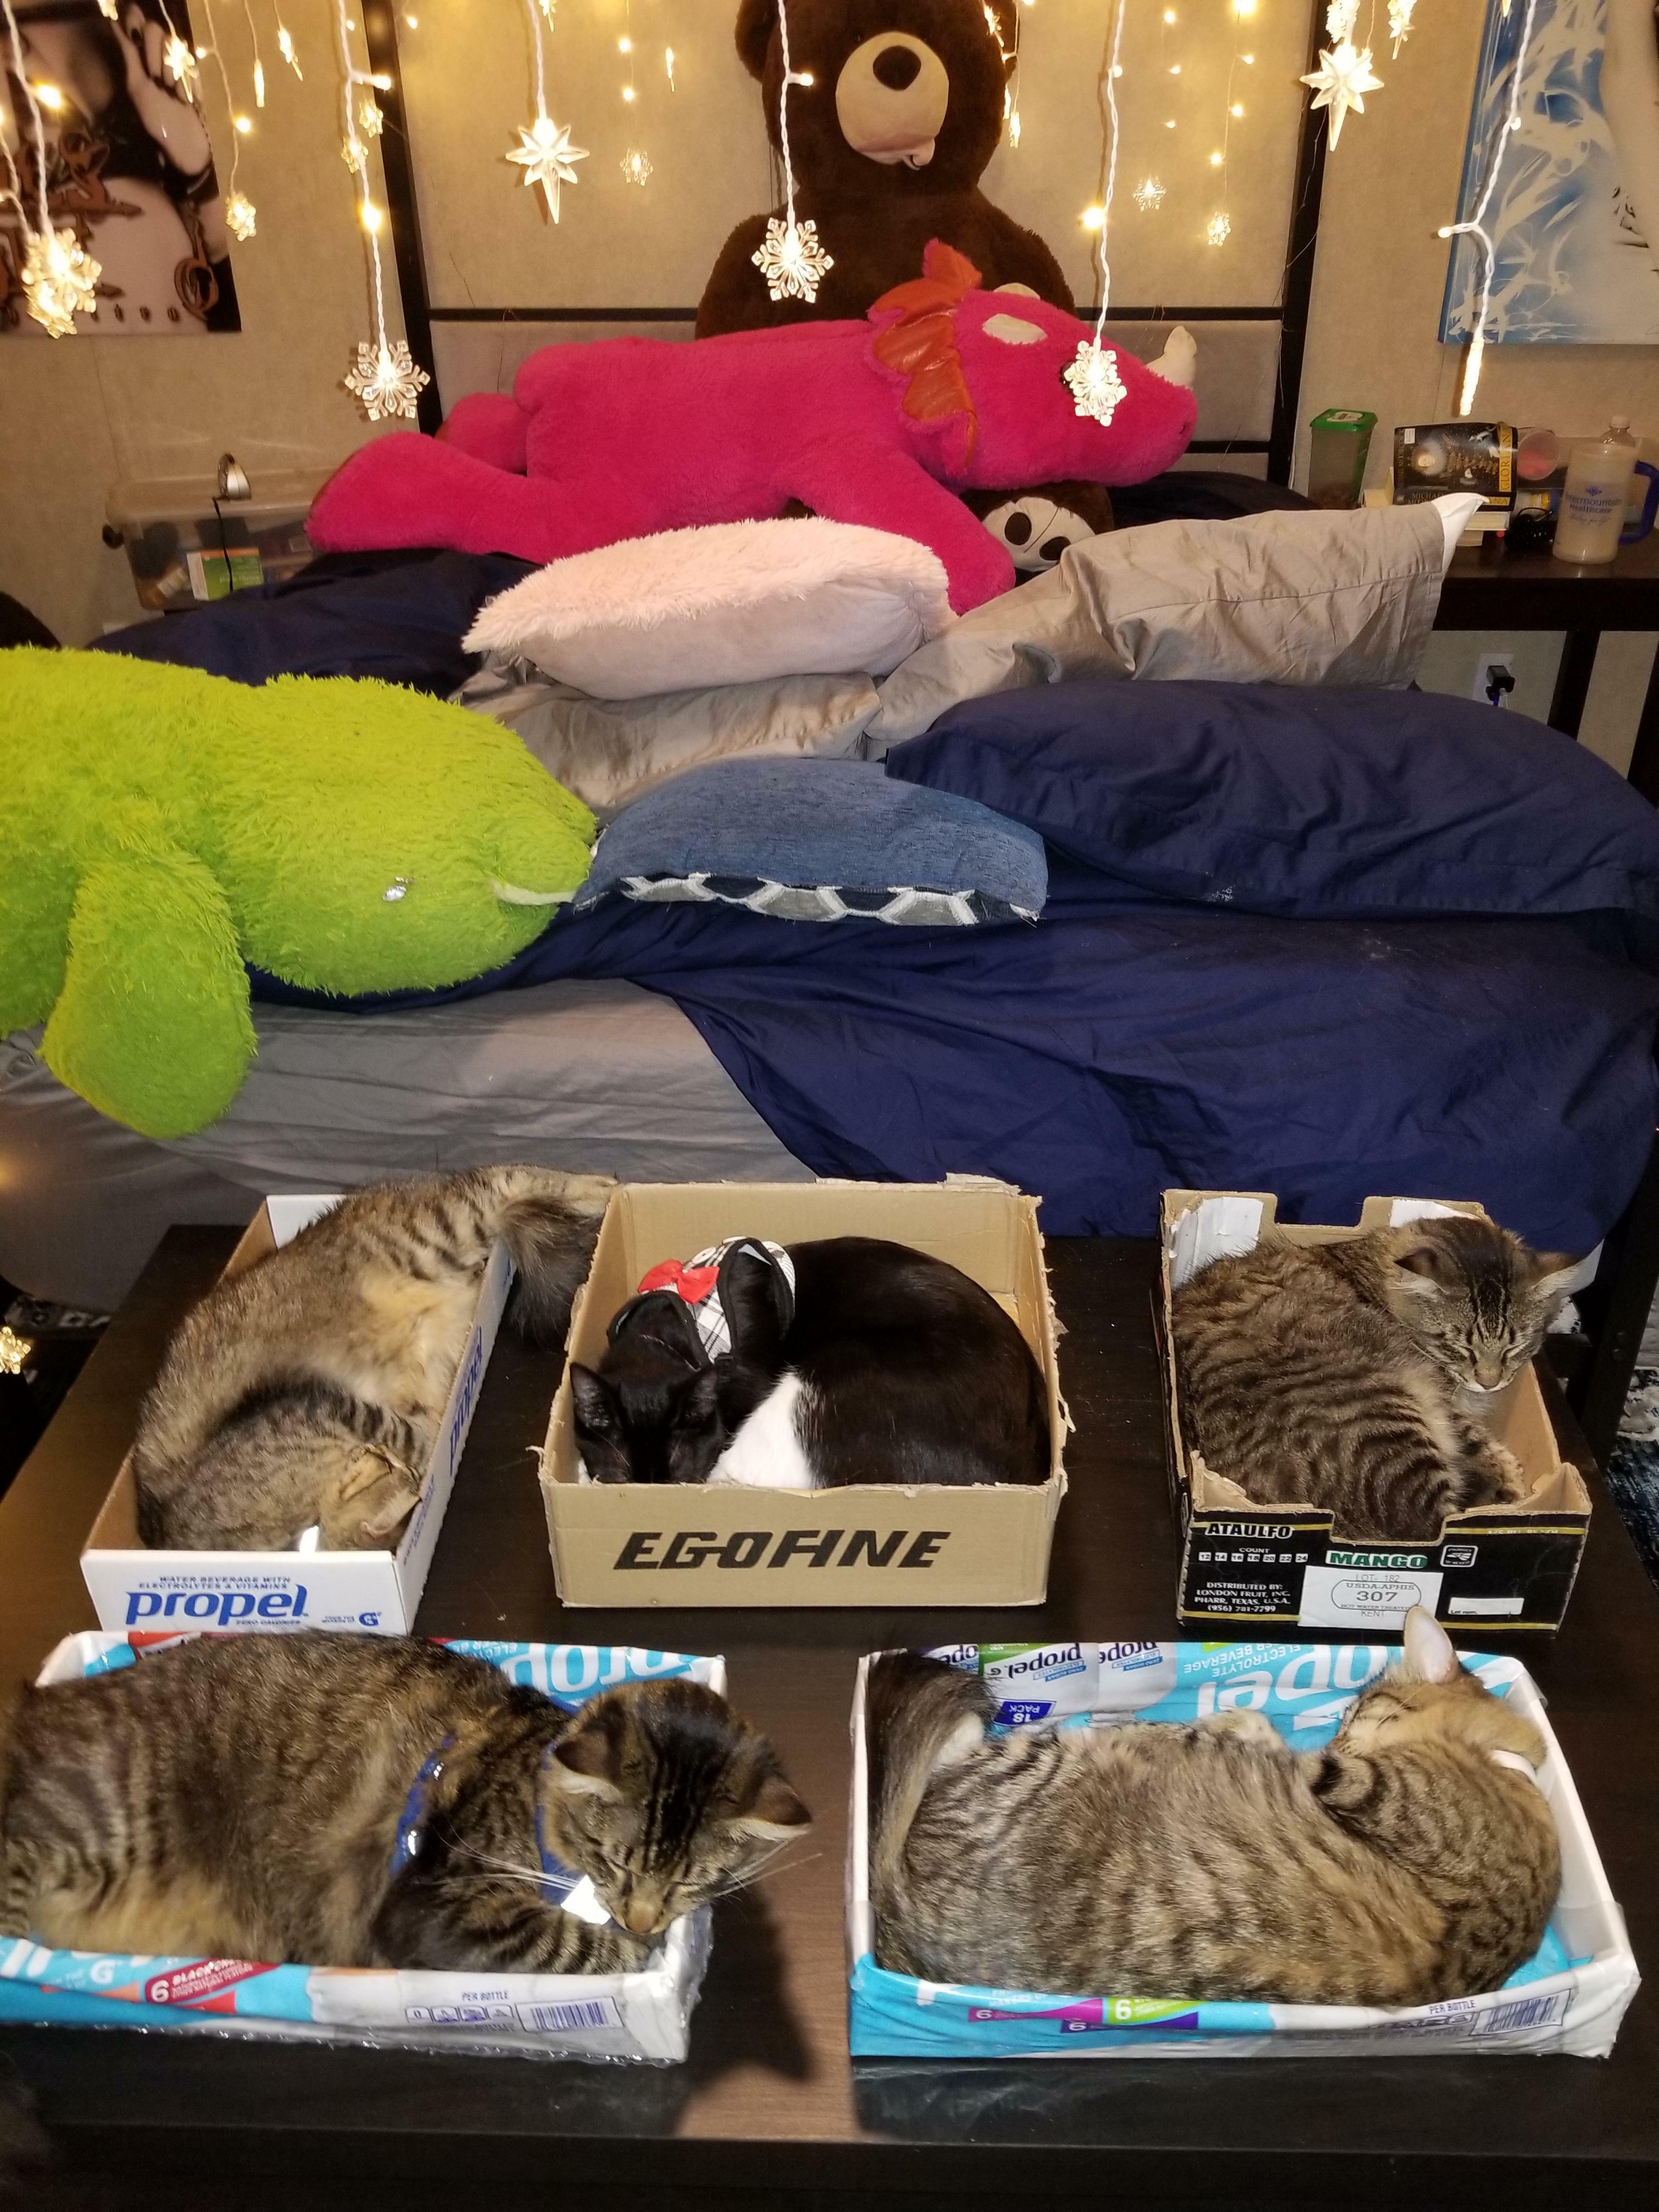 On m'a envoyé ici pour te montrer à quel point les pièges à chats peuvent être efficaces au pied du lit. Tout le monde est bien bordé, personne ne se fait écraser dans son sommeil !